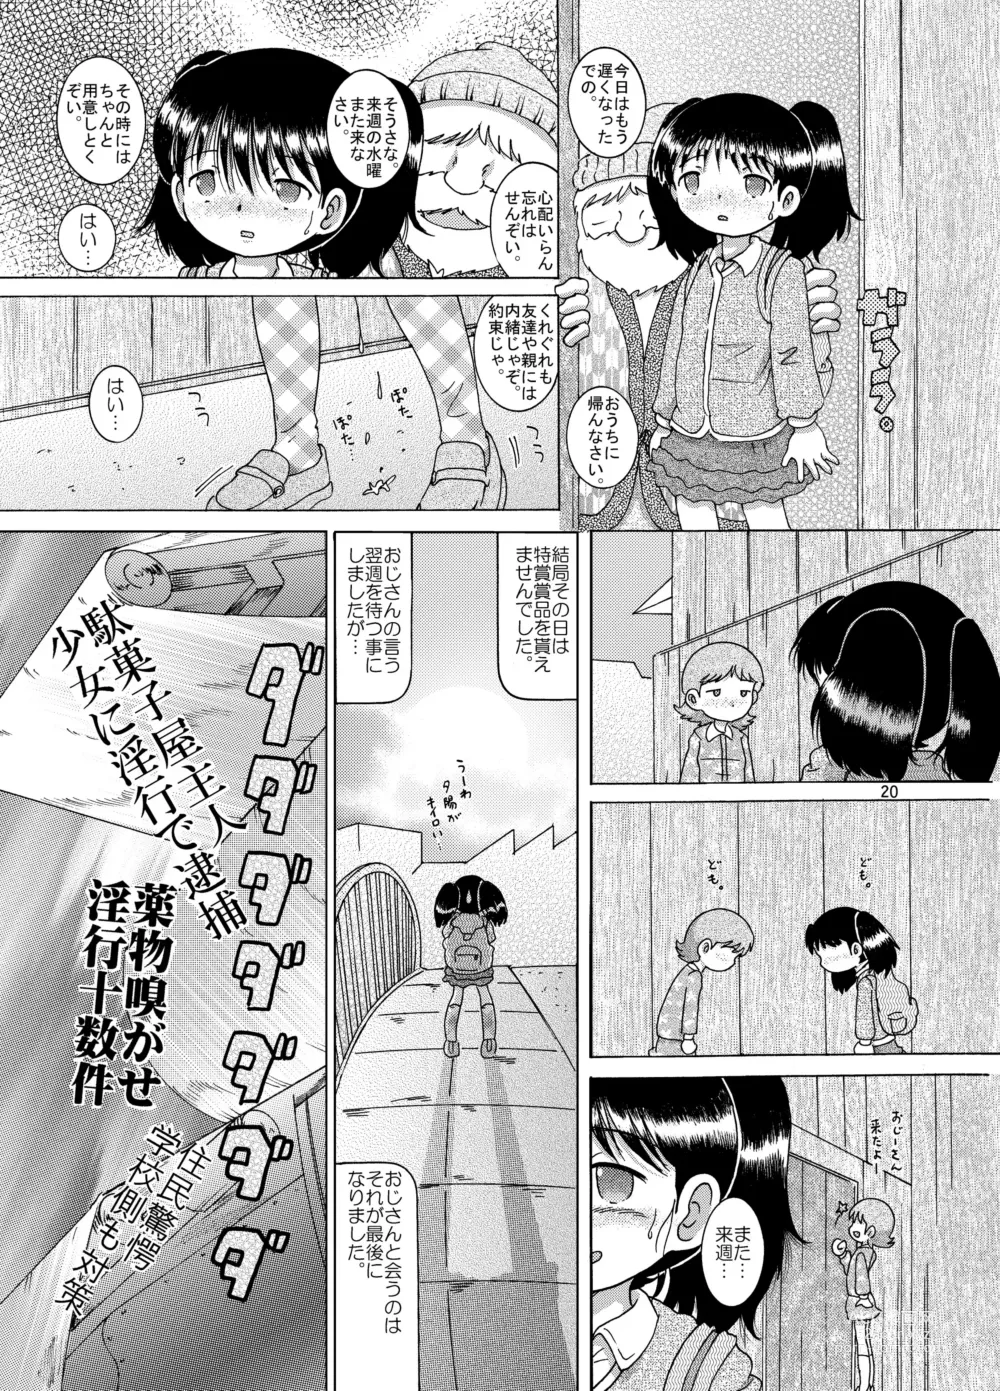 Page 20 of doujinshi Kakesei Amakan